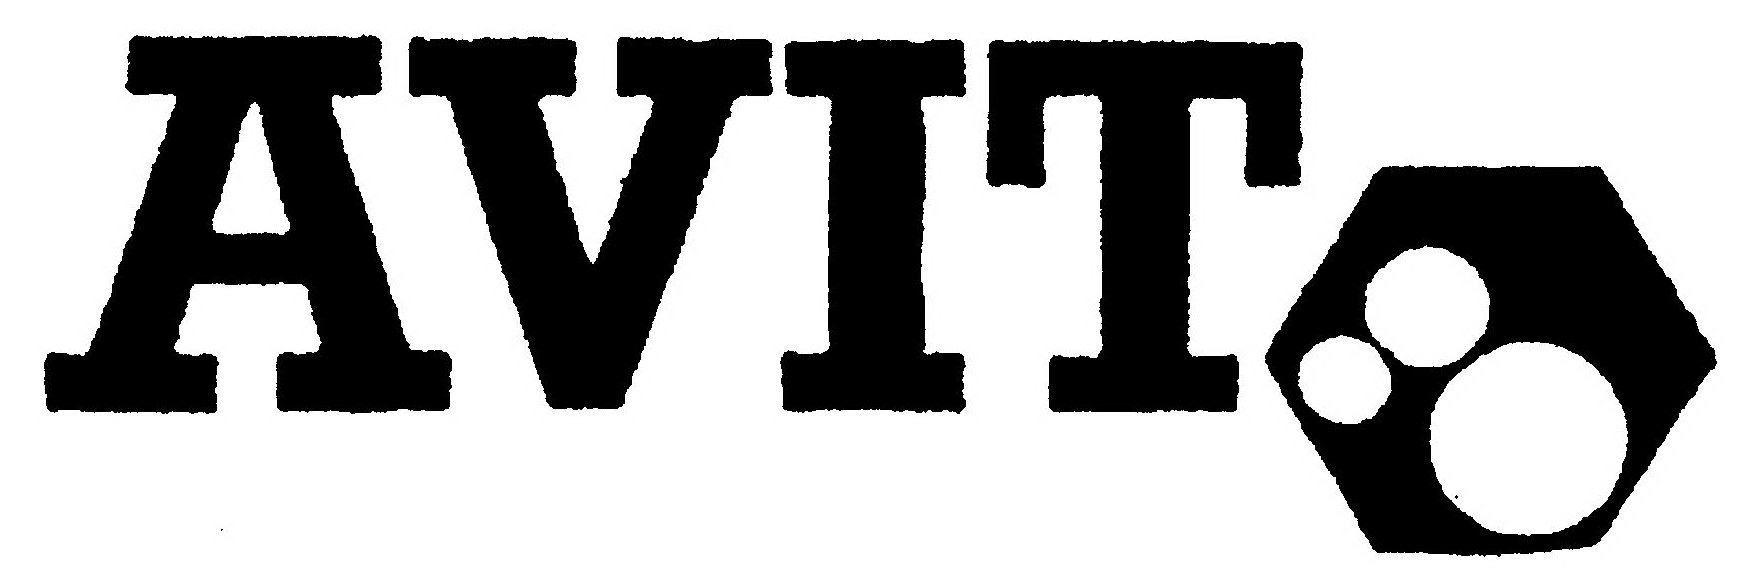 Trademark Logo AVIT